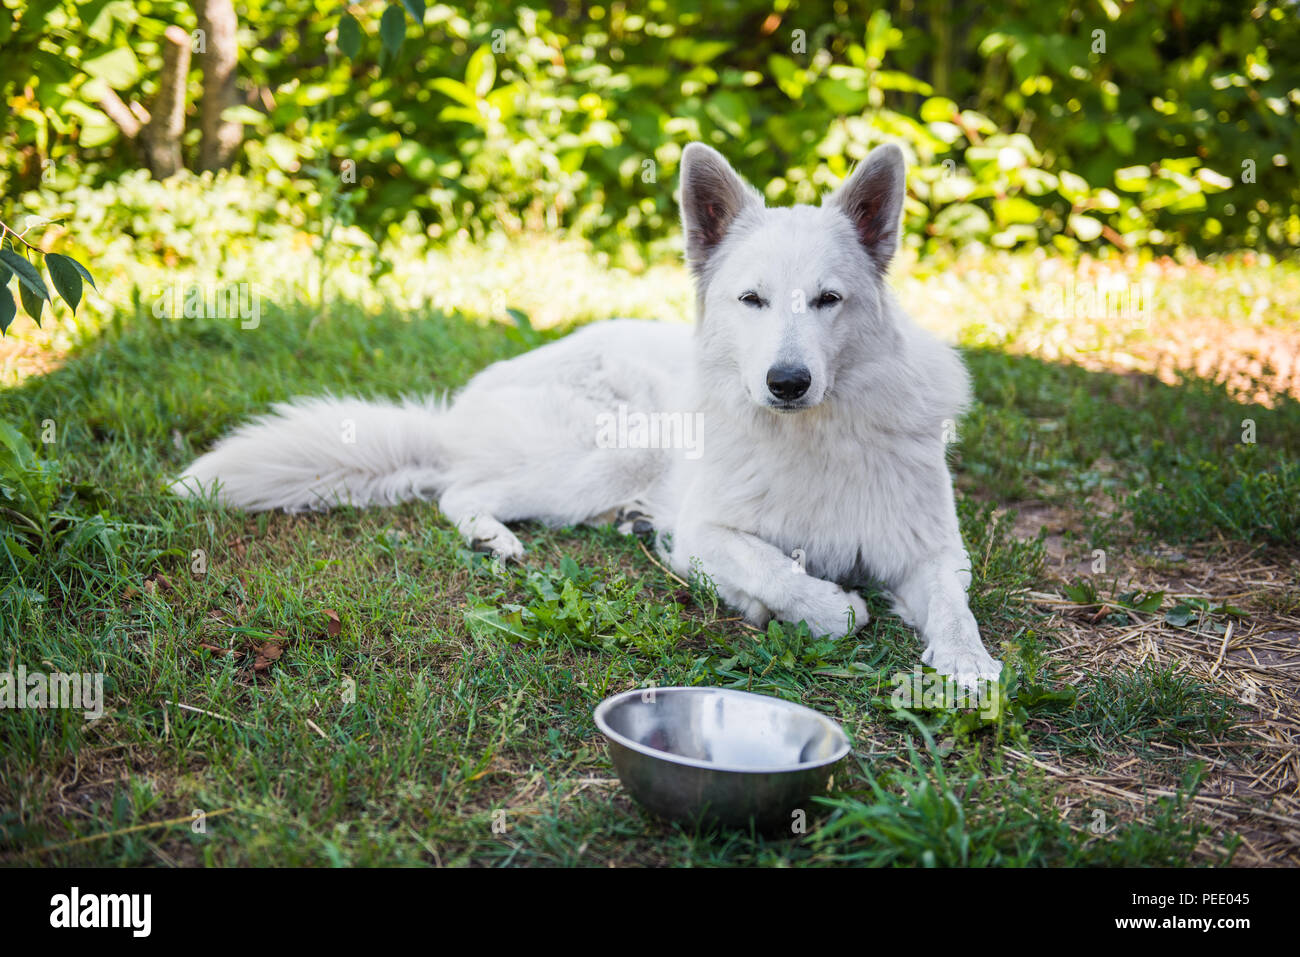 Weisser Schweizer Schäferhund mit einer Schüssel. Hund ist außerhalb essen  Stockfotografie - Alamy